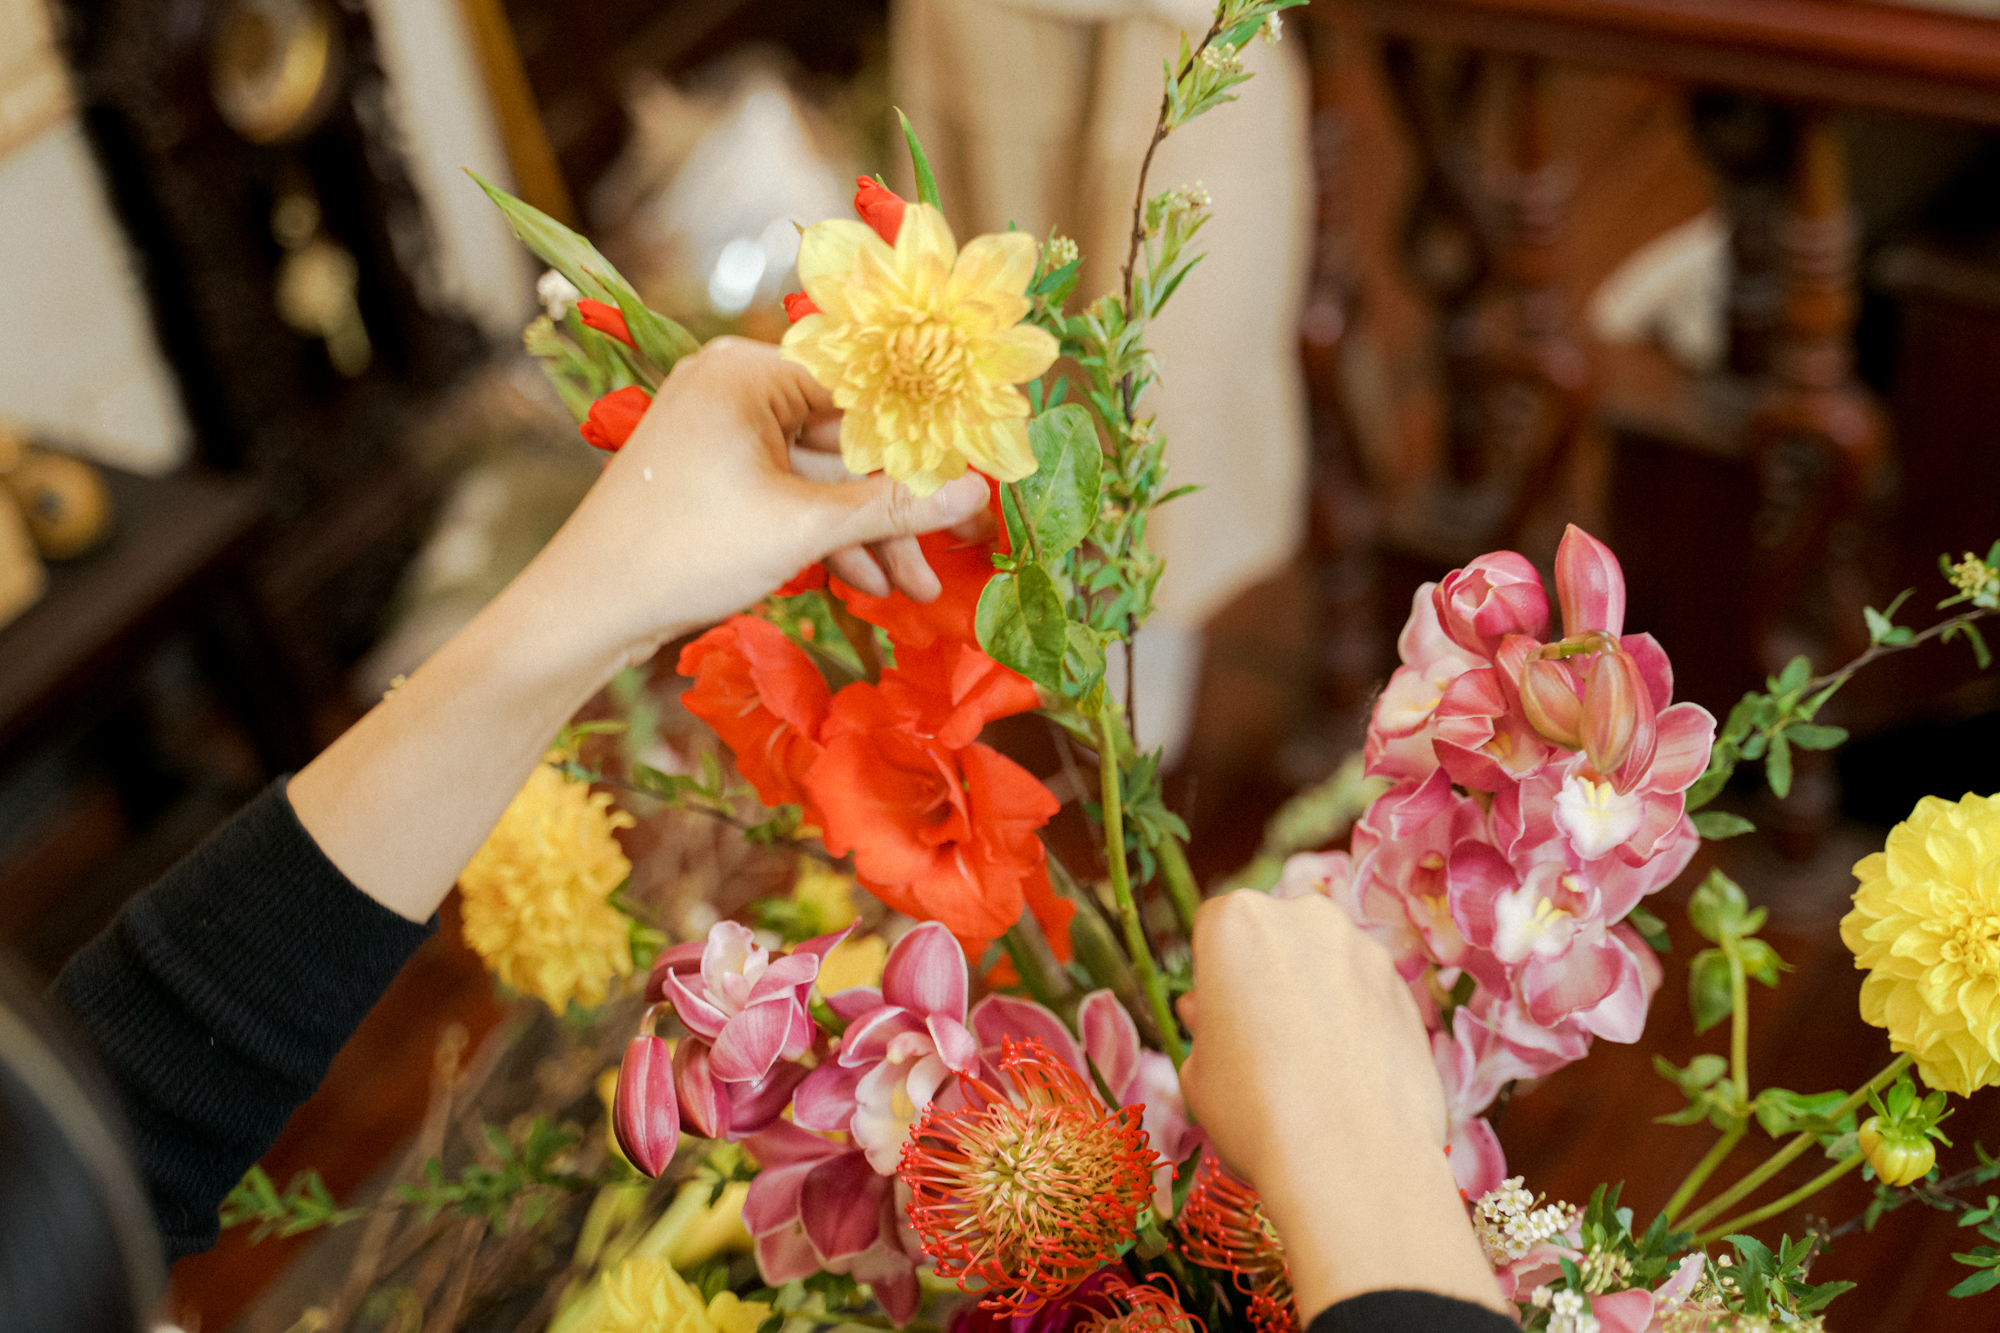 Hội chị em thích các loại hoa mới lạ thì cùng thử cách cắm bình hoa Tết này, đảm bảo ai cũng khen - Ảnh 5.